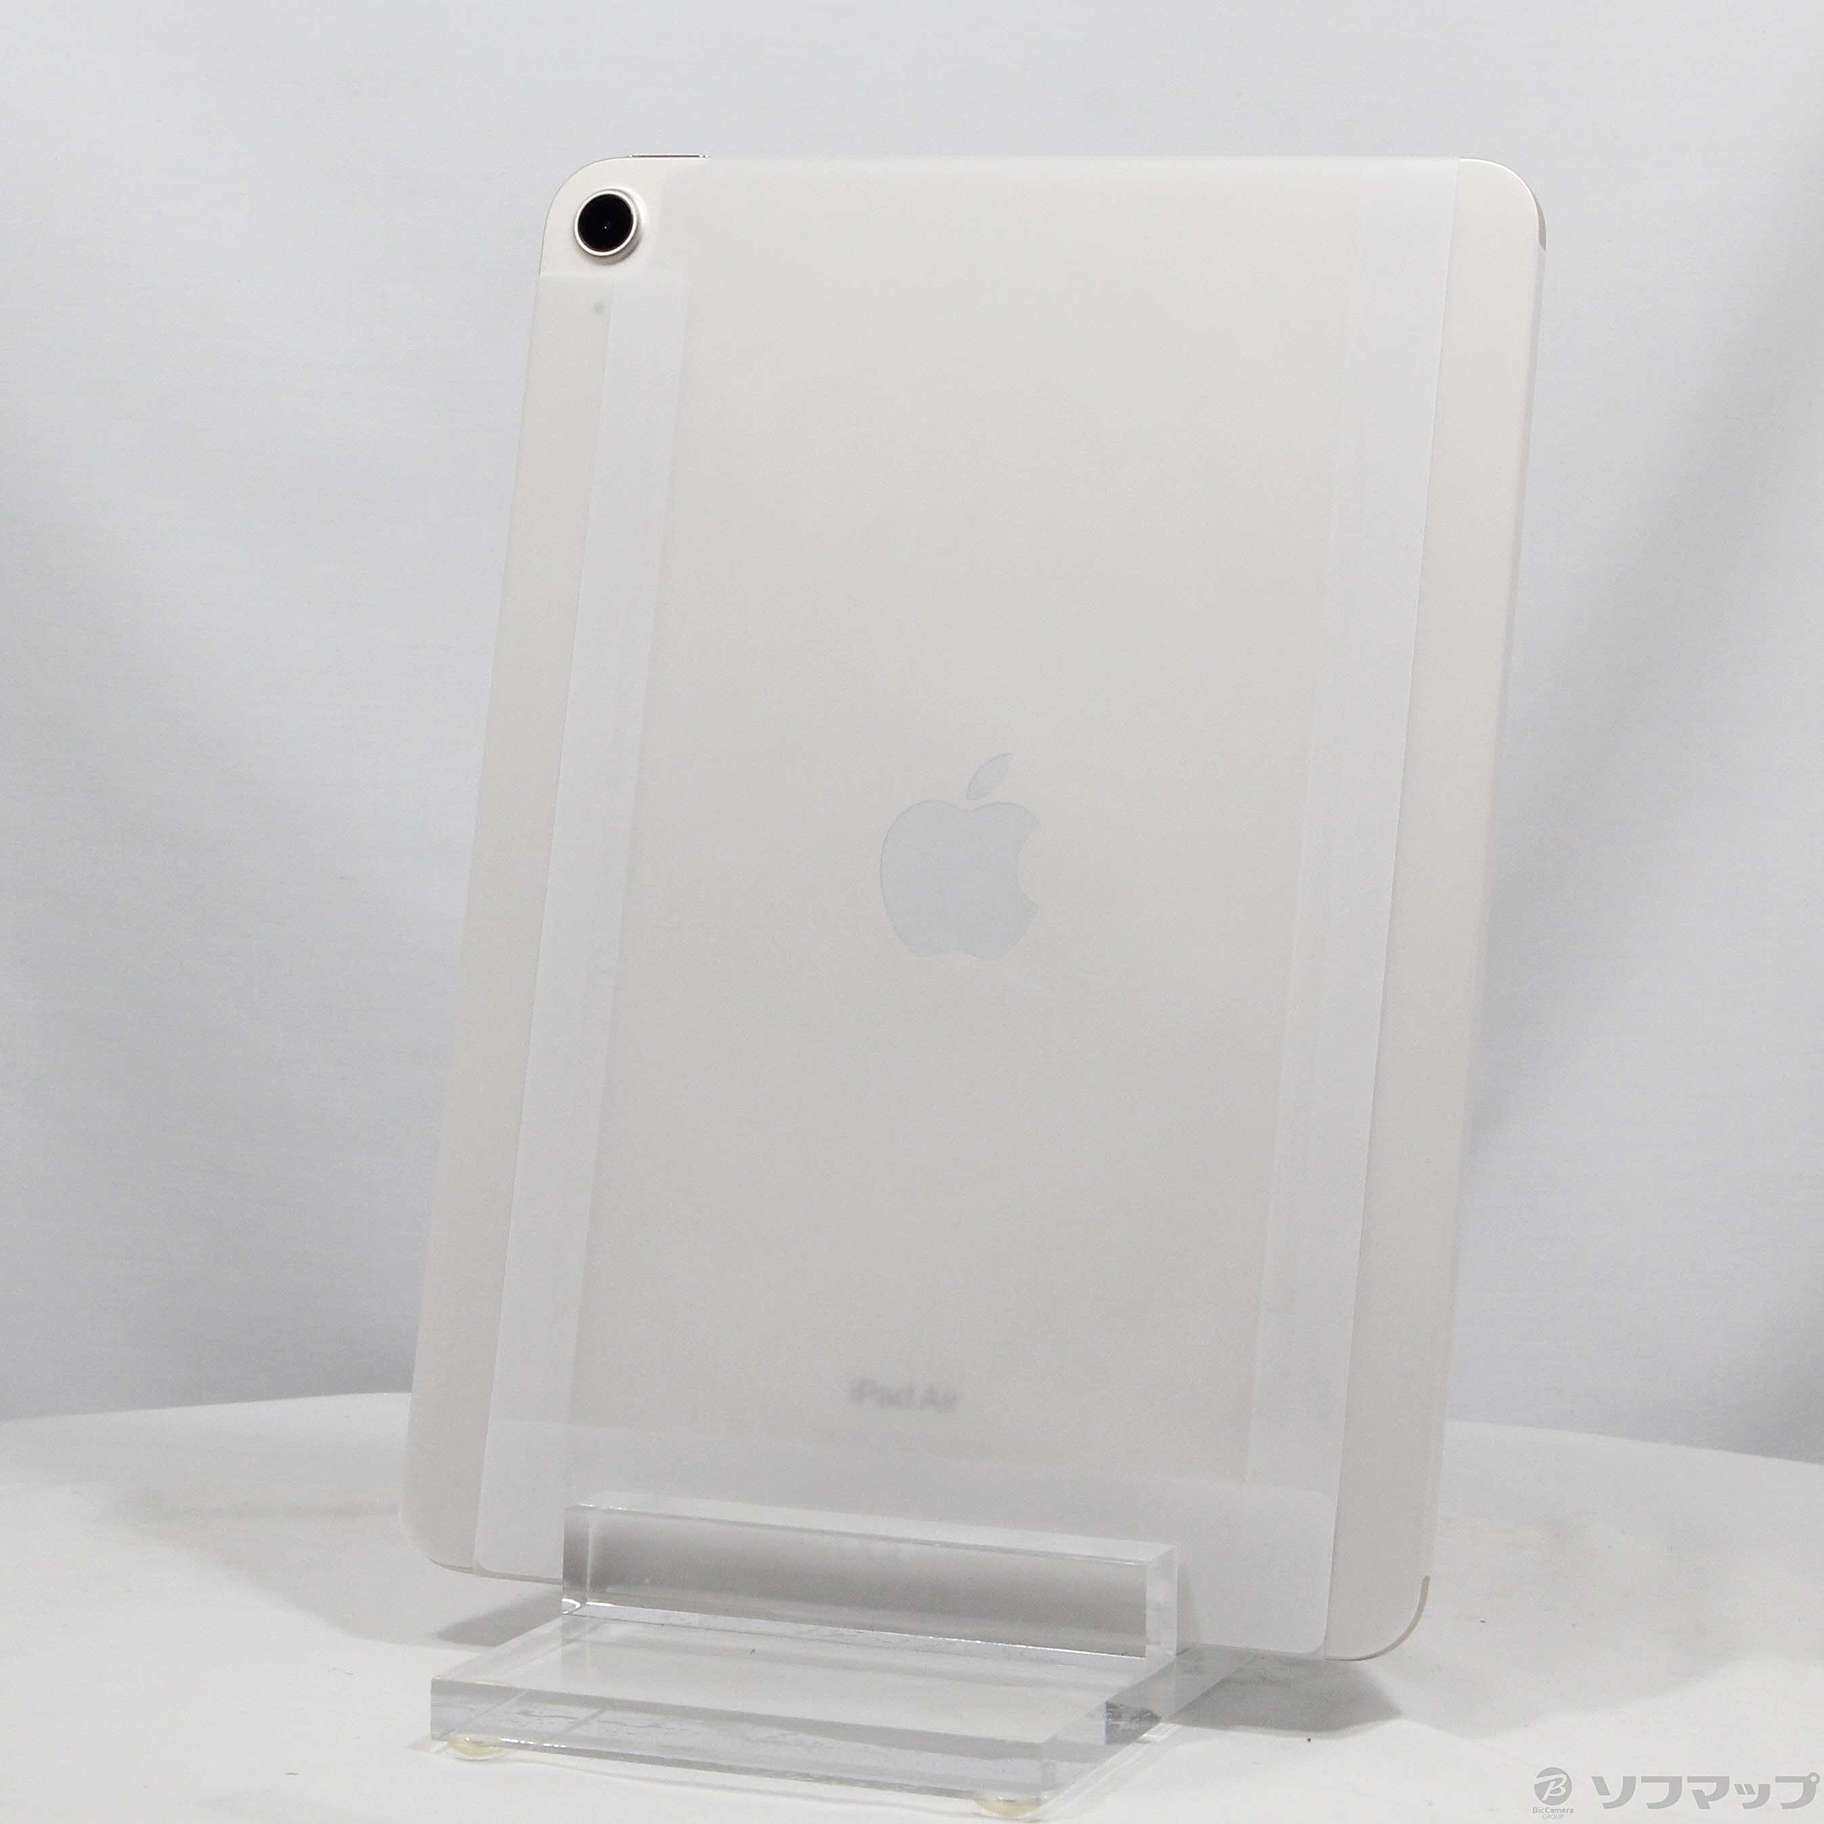 再販ご予約限定送料無料]-Apple(アップル) iPad Air 第5世代 64GB